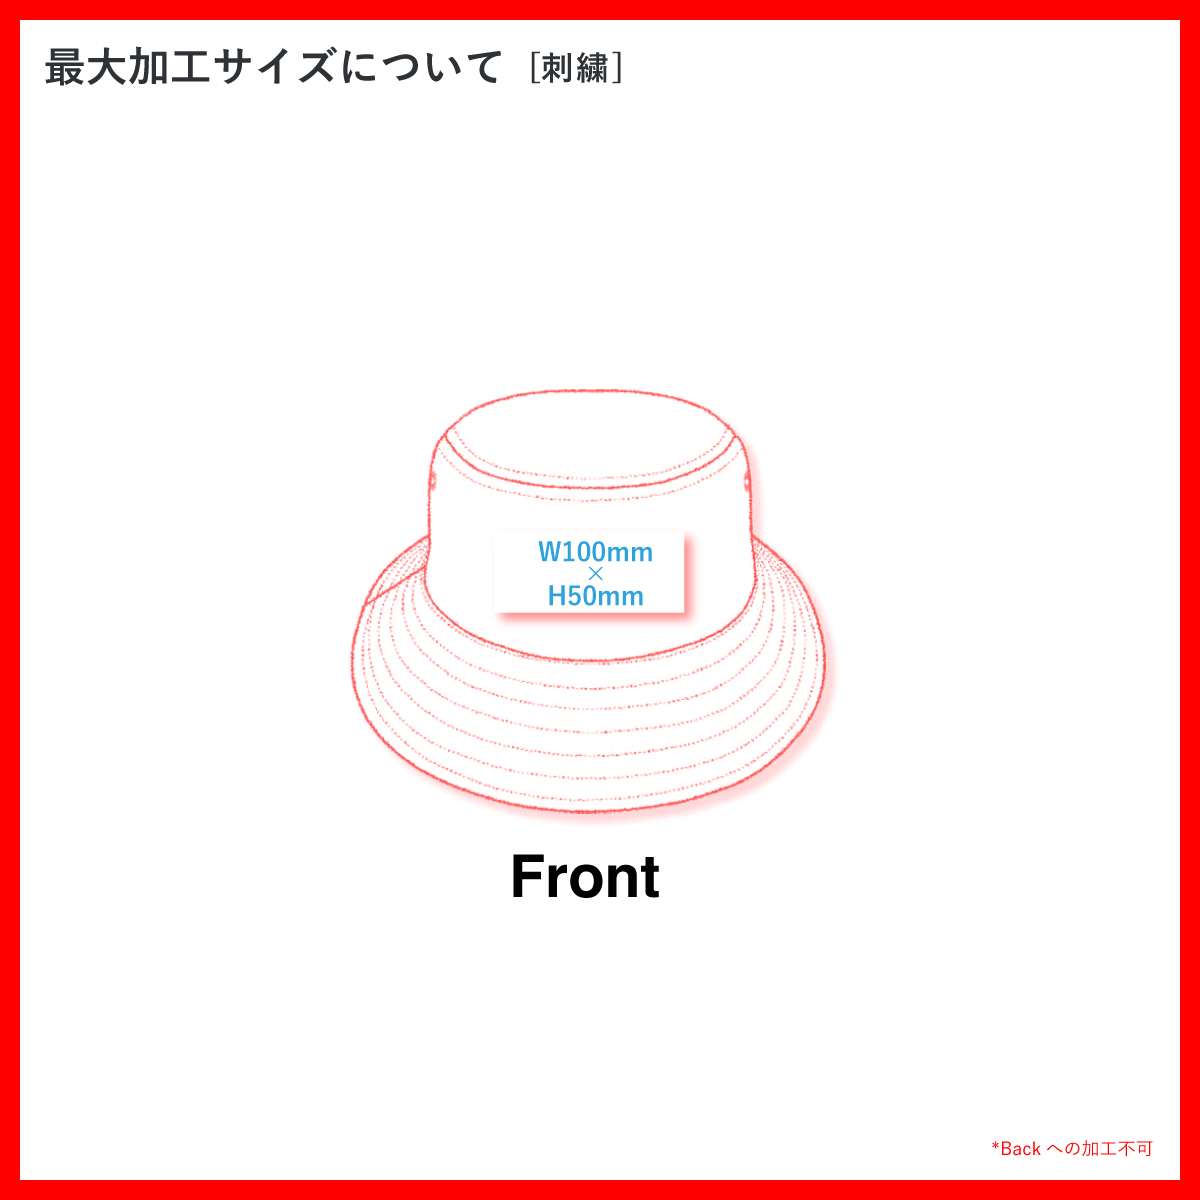 AS Colour  アズカラー CORD BUCKET HAT (品番1176US)